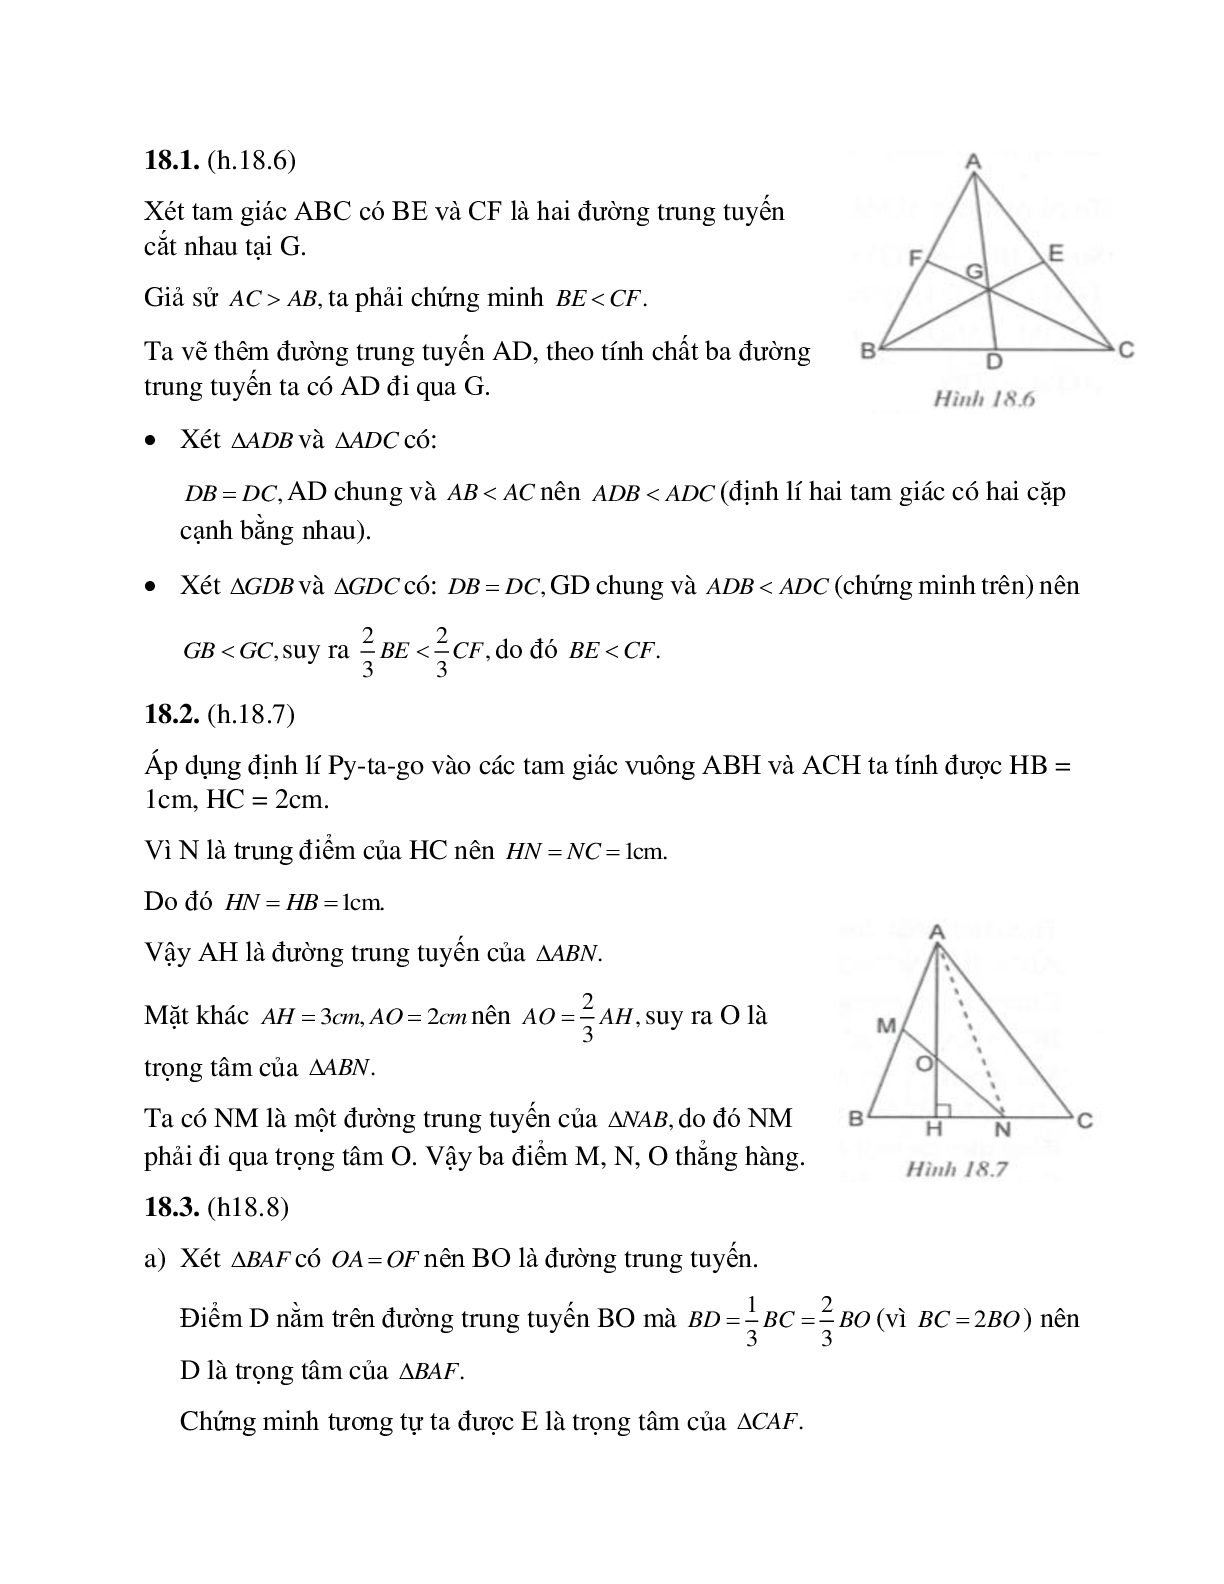 Tuyển tập những bài tập hay nhất về Tính chất ba đường trung tuyến của tam giác có lời giải (trang 6)